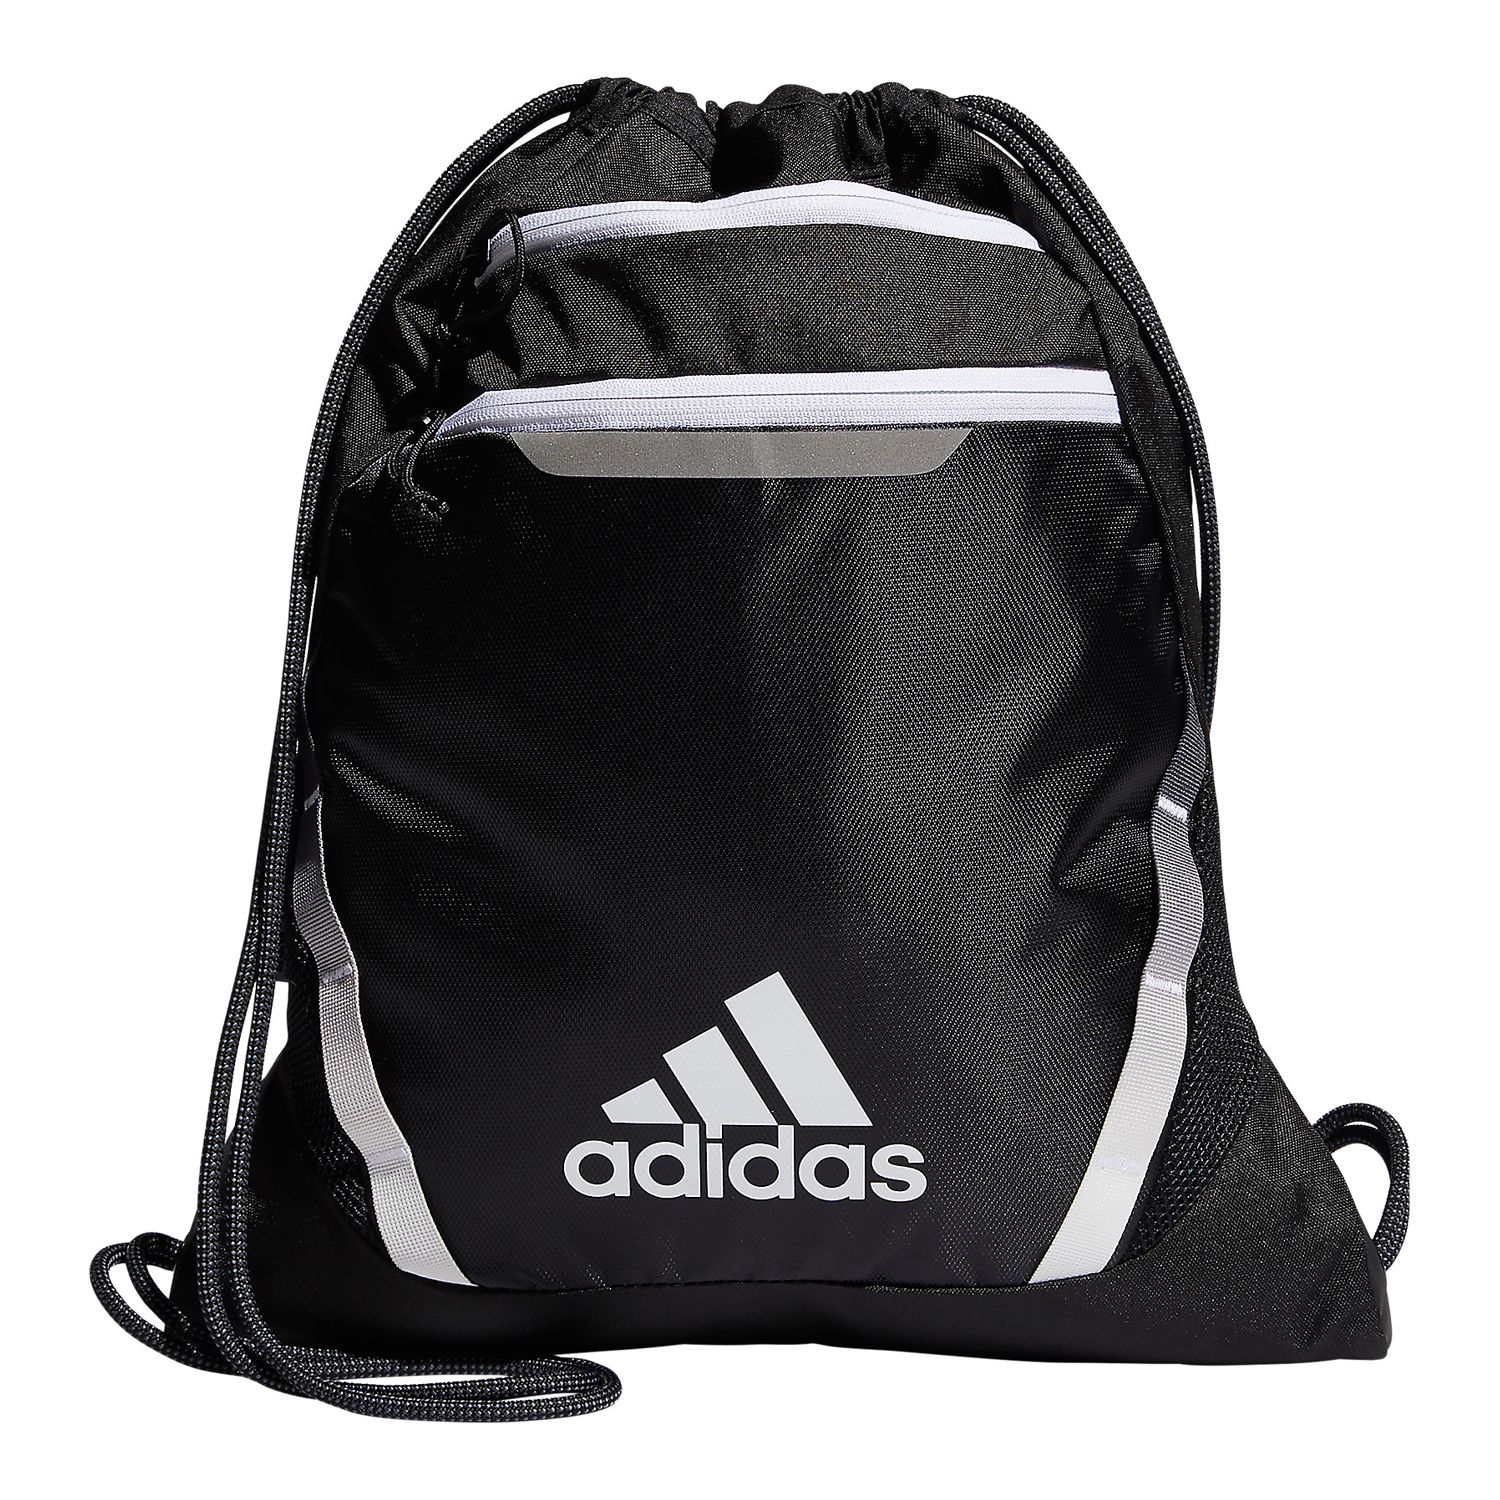 adidas Rumble Drawstring Backpack